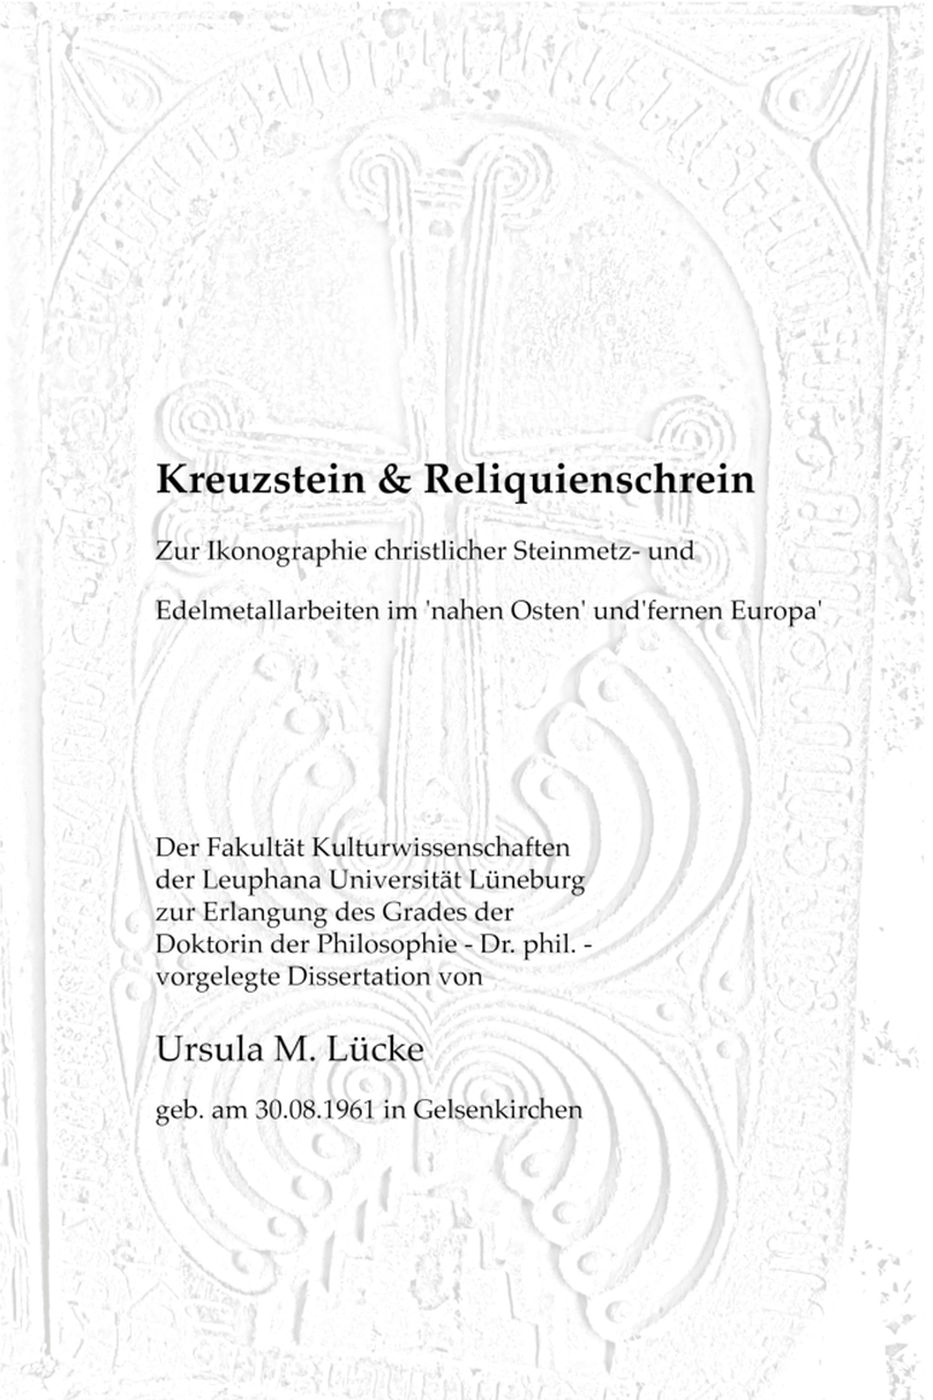 Luecke_Kreuzstein-Reliquienschrein_Promotion